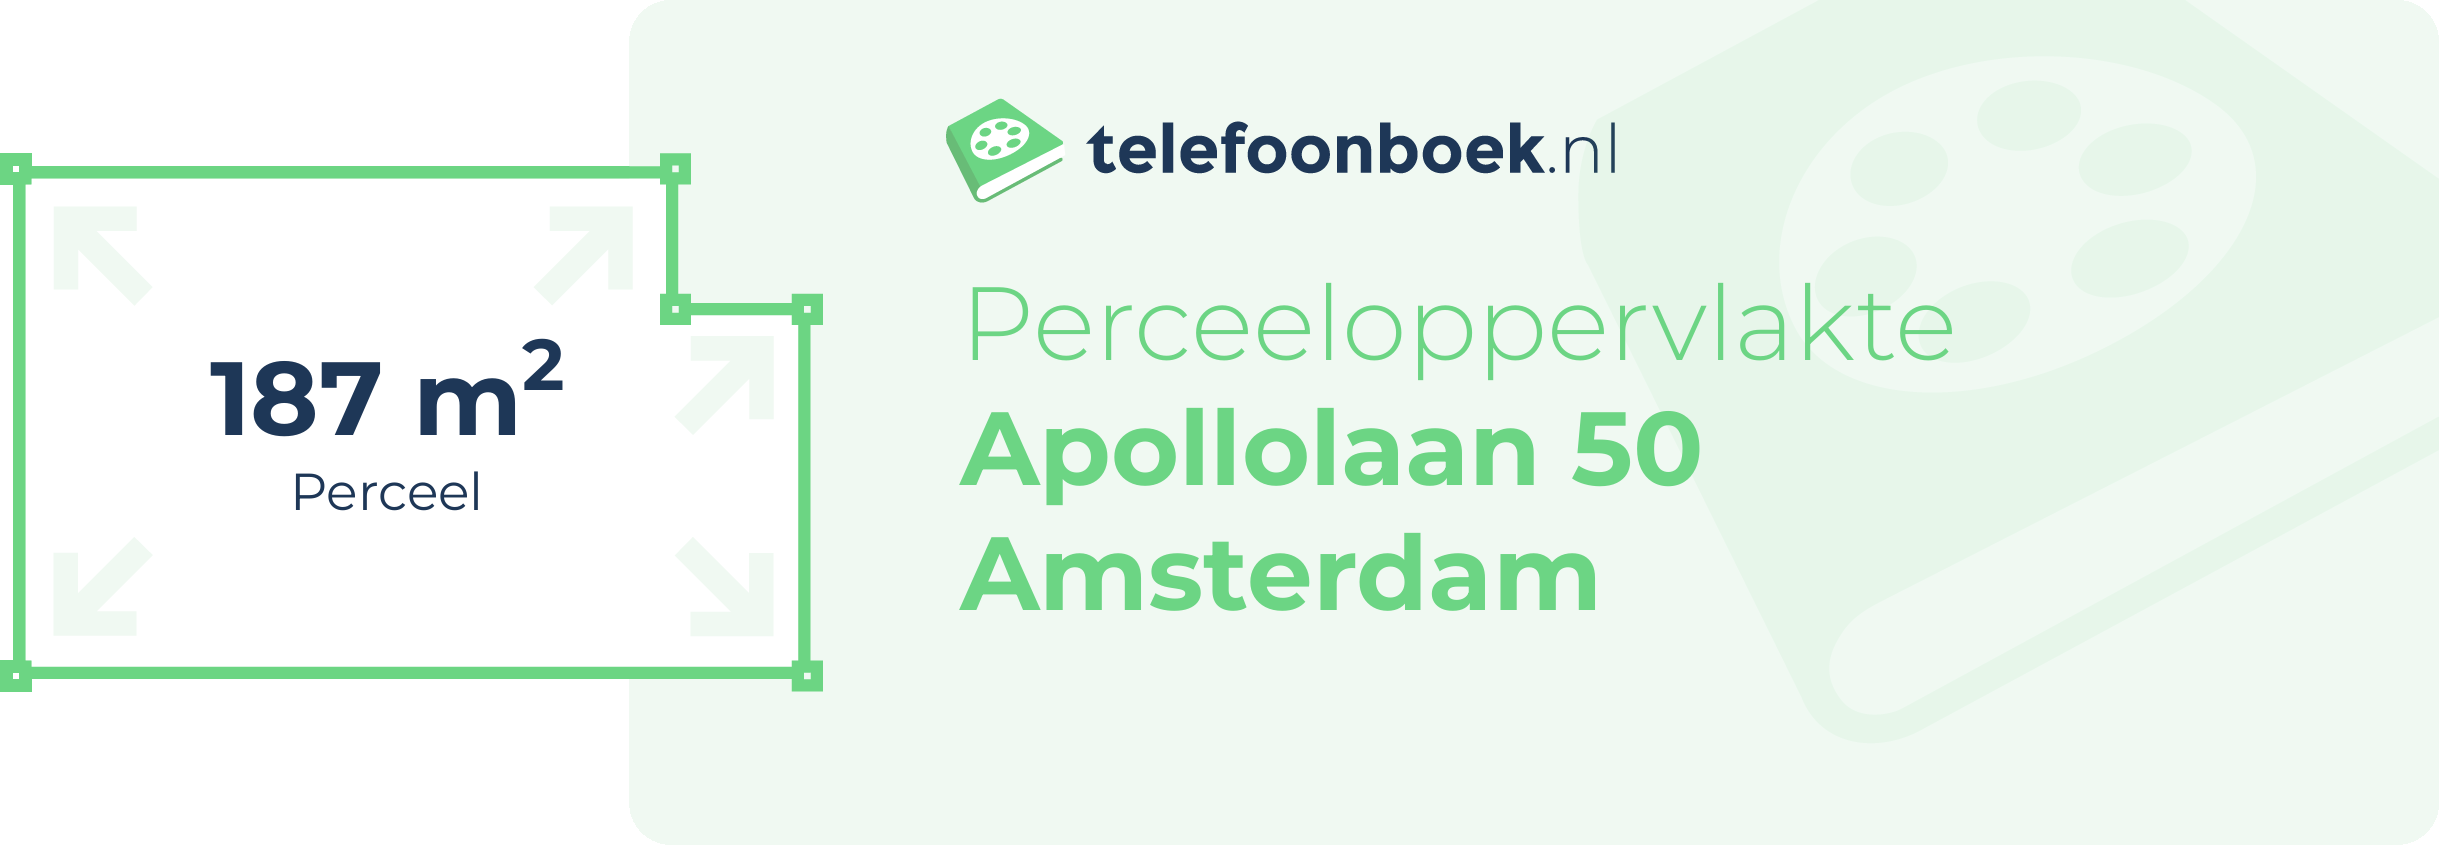 Perceeloppervlakte Apollolaan 50 Amsterdam